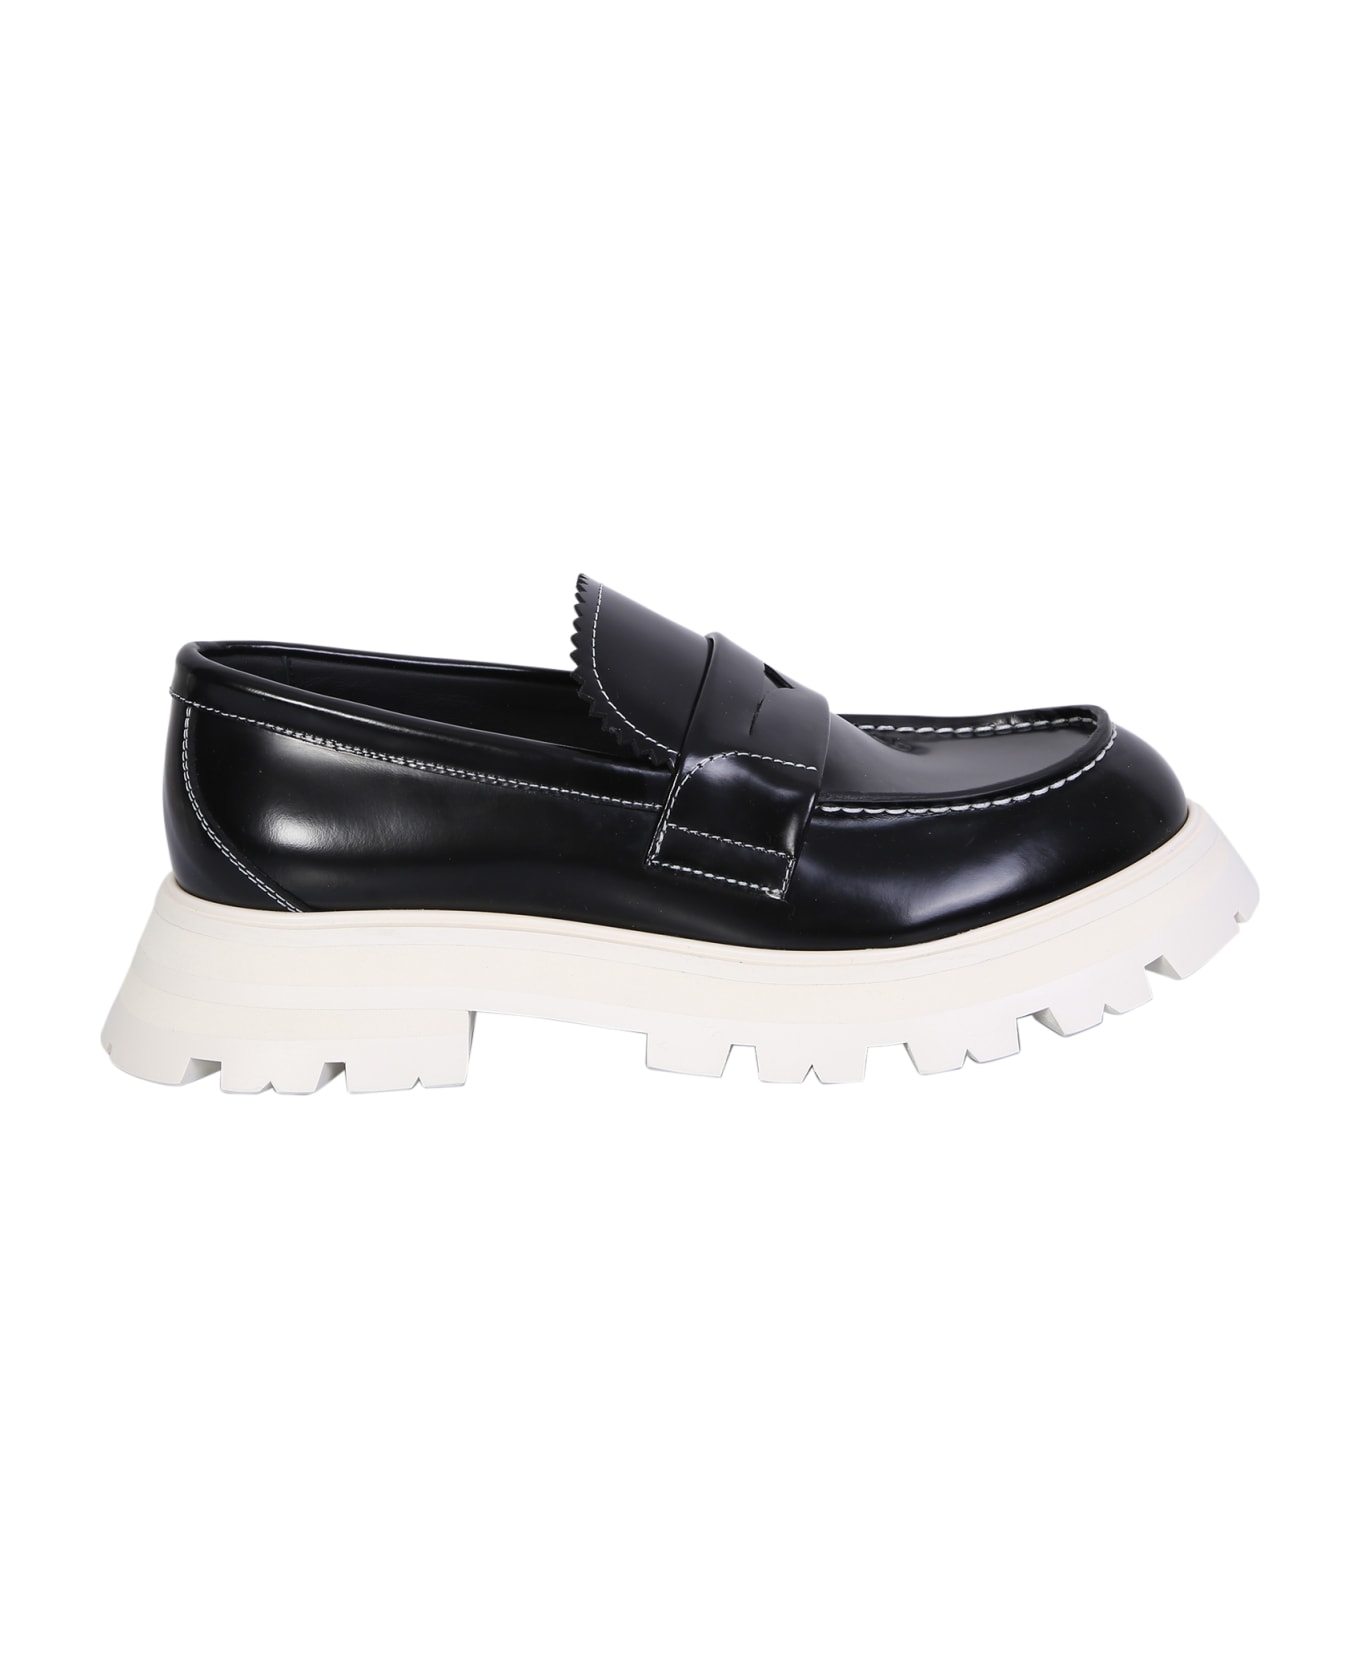 Alexander McQueen Black Leather Loafer - Black フラットシューズ